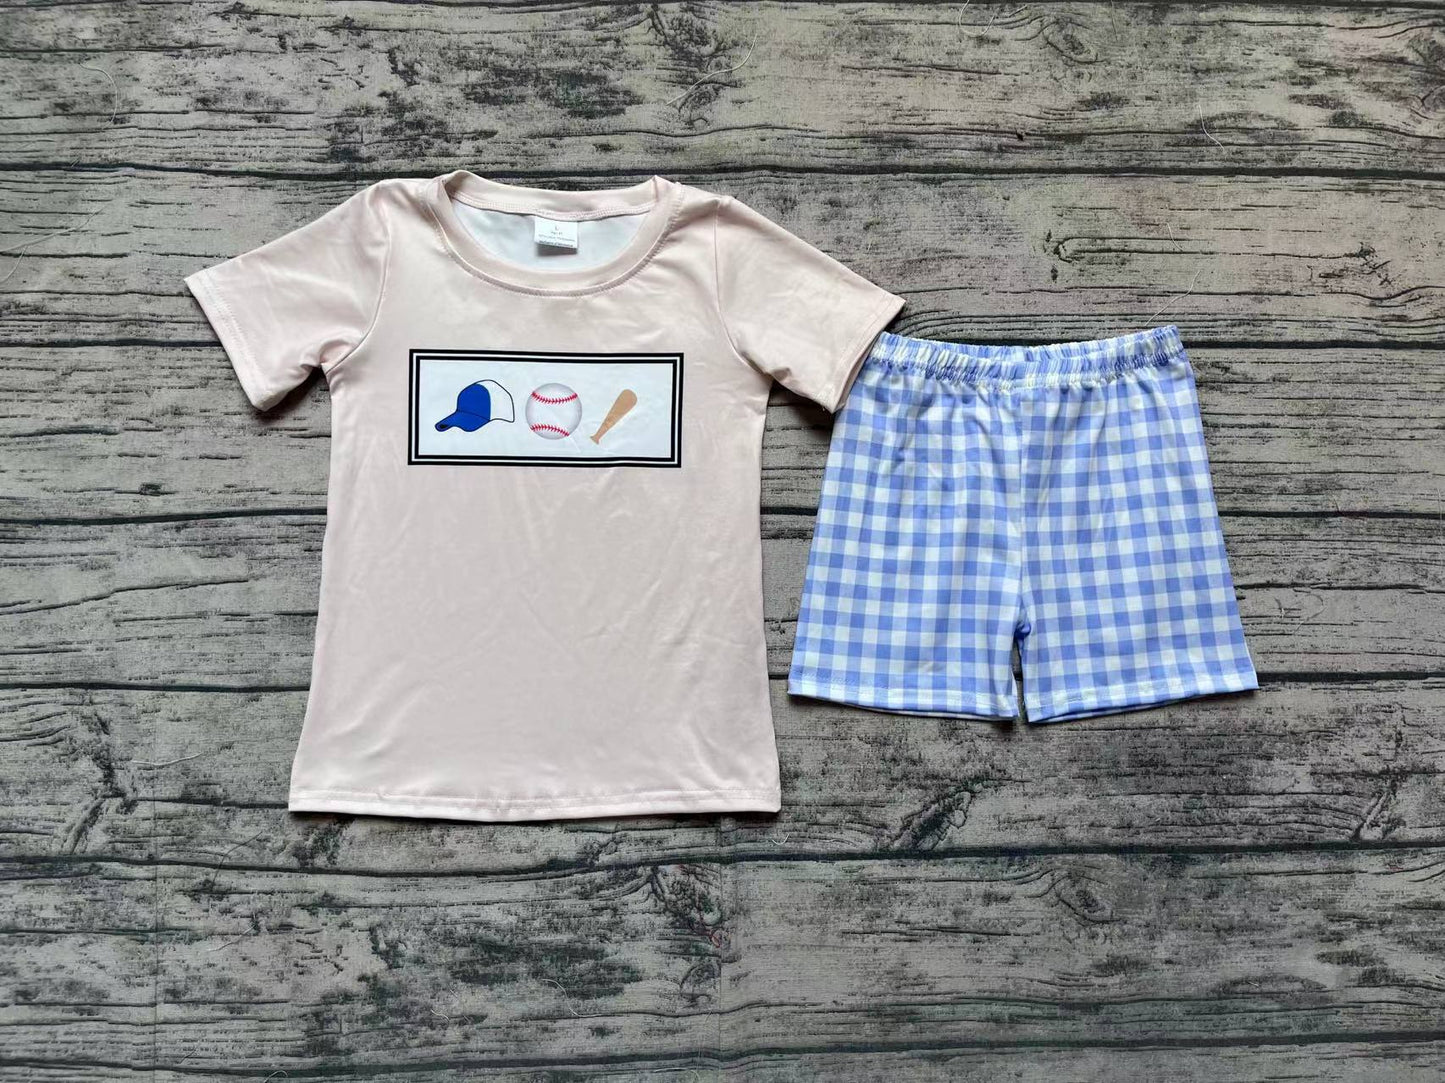 Baby Boys Baseball Tee Shirts Tops Blue Checkered Shorts Clothes Sets Preorder